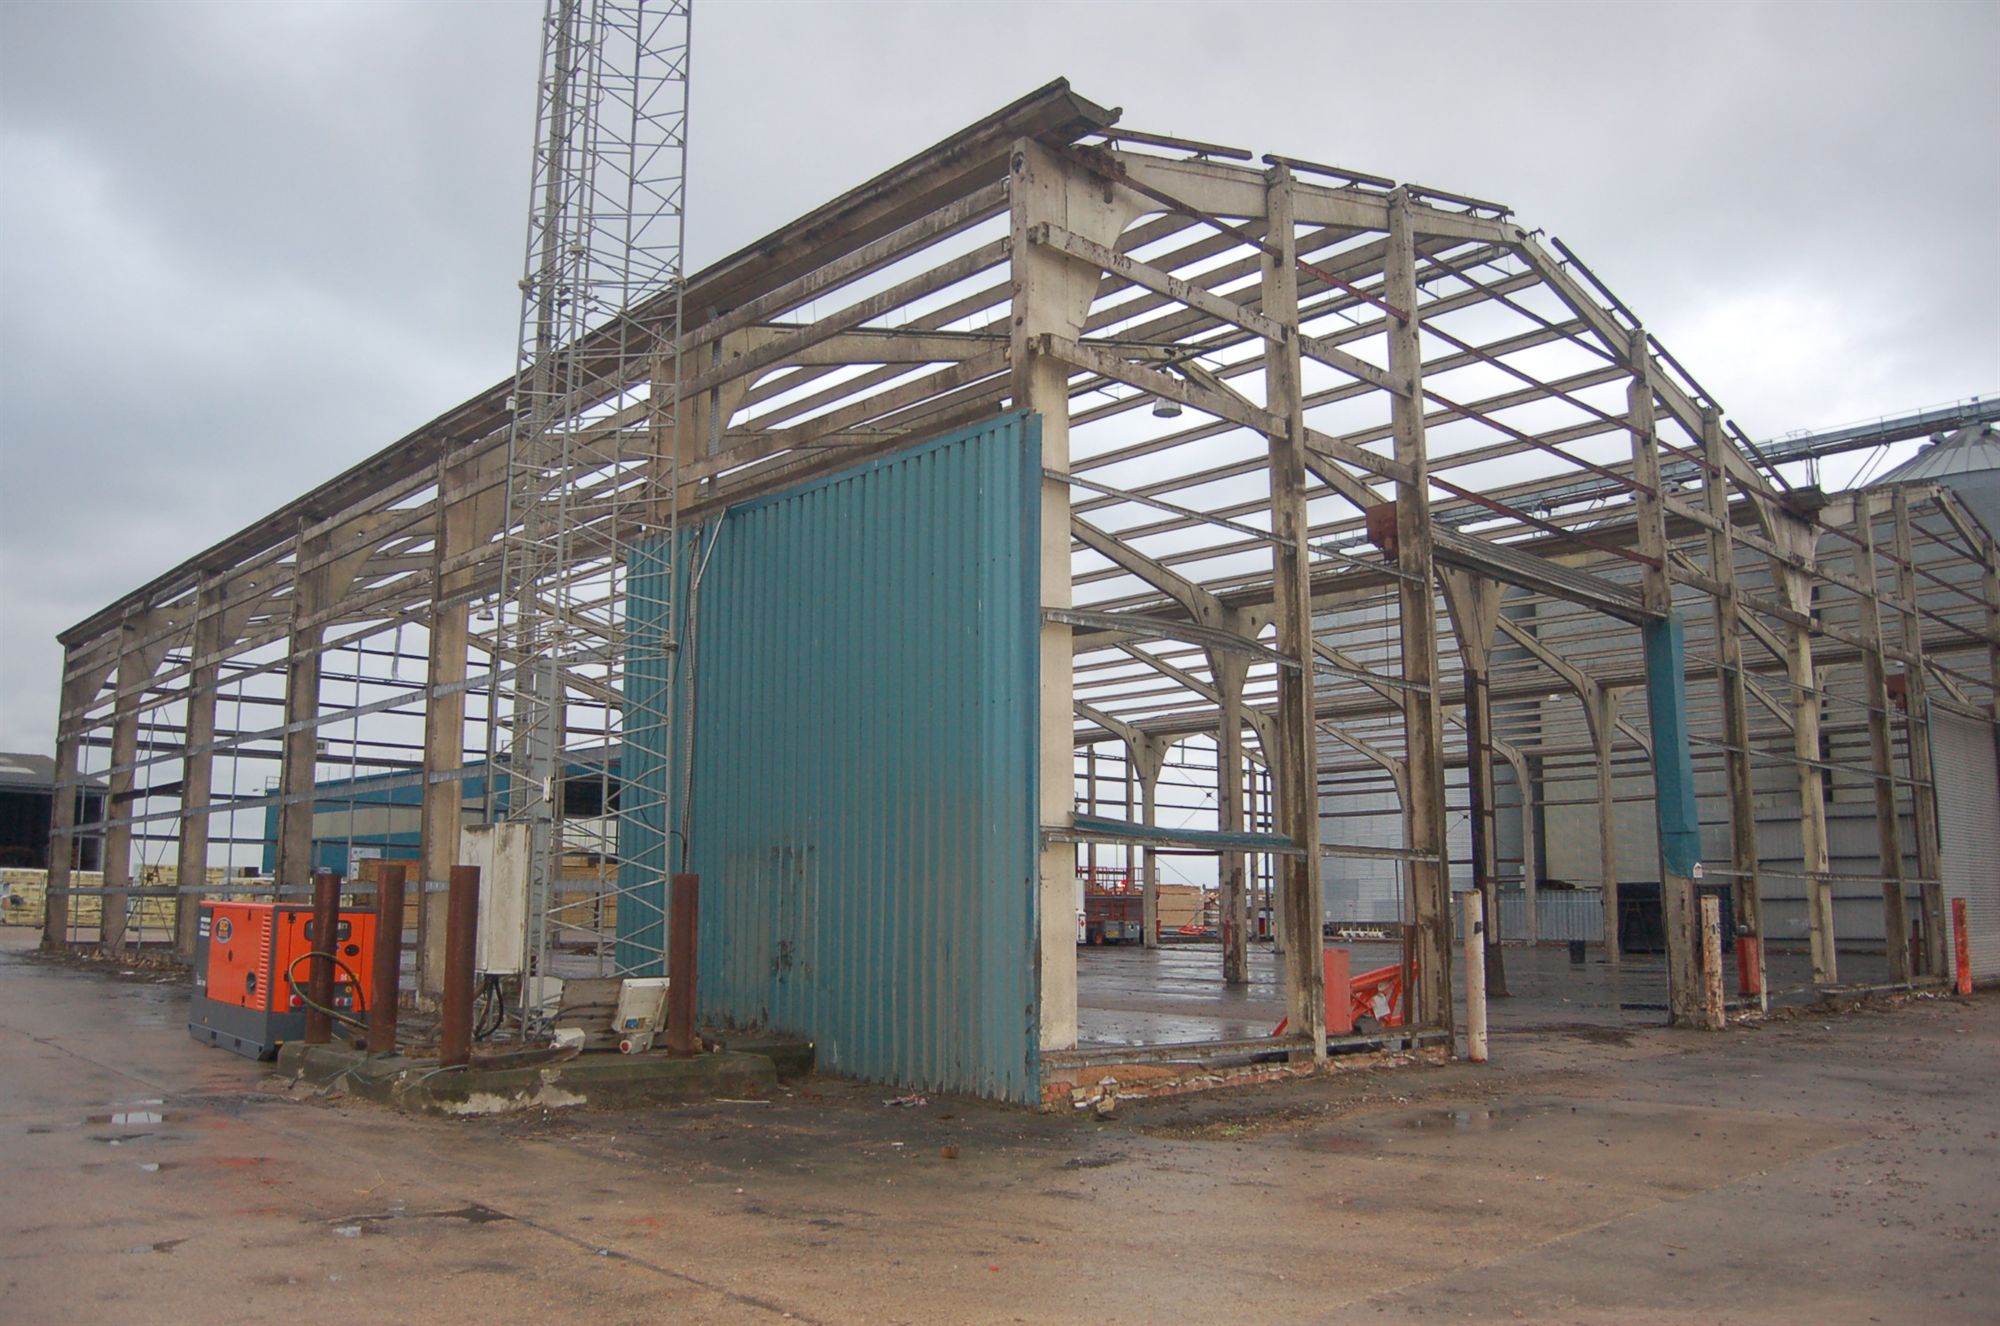 New grain warehouse for Shoreham Port